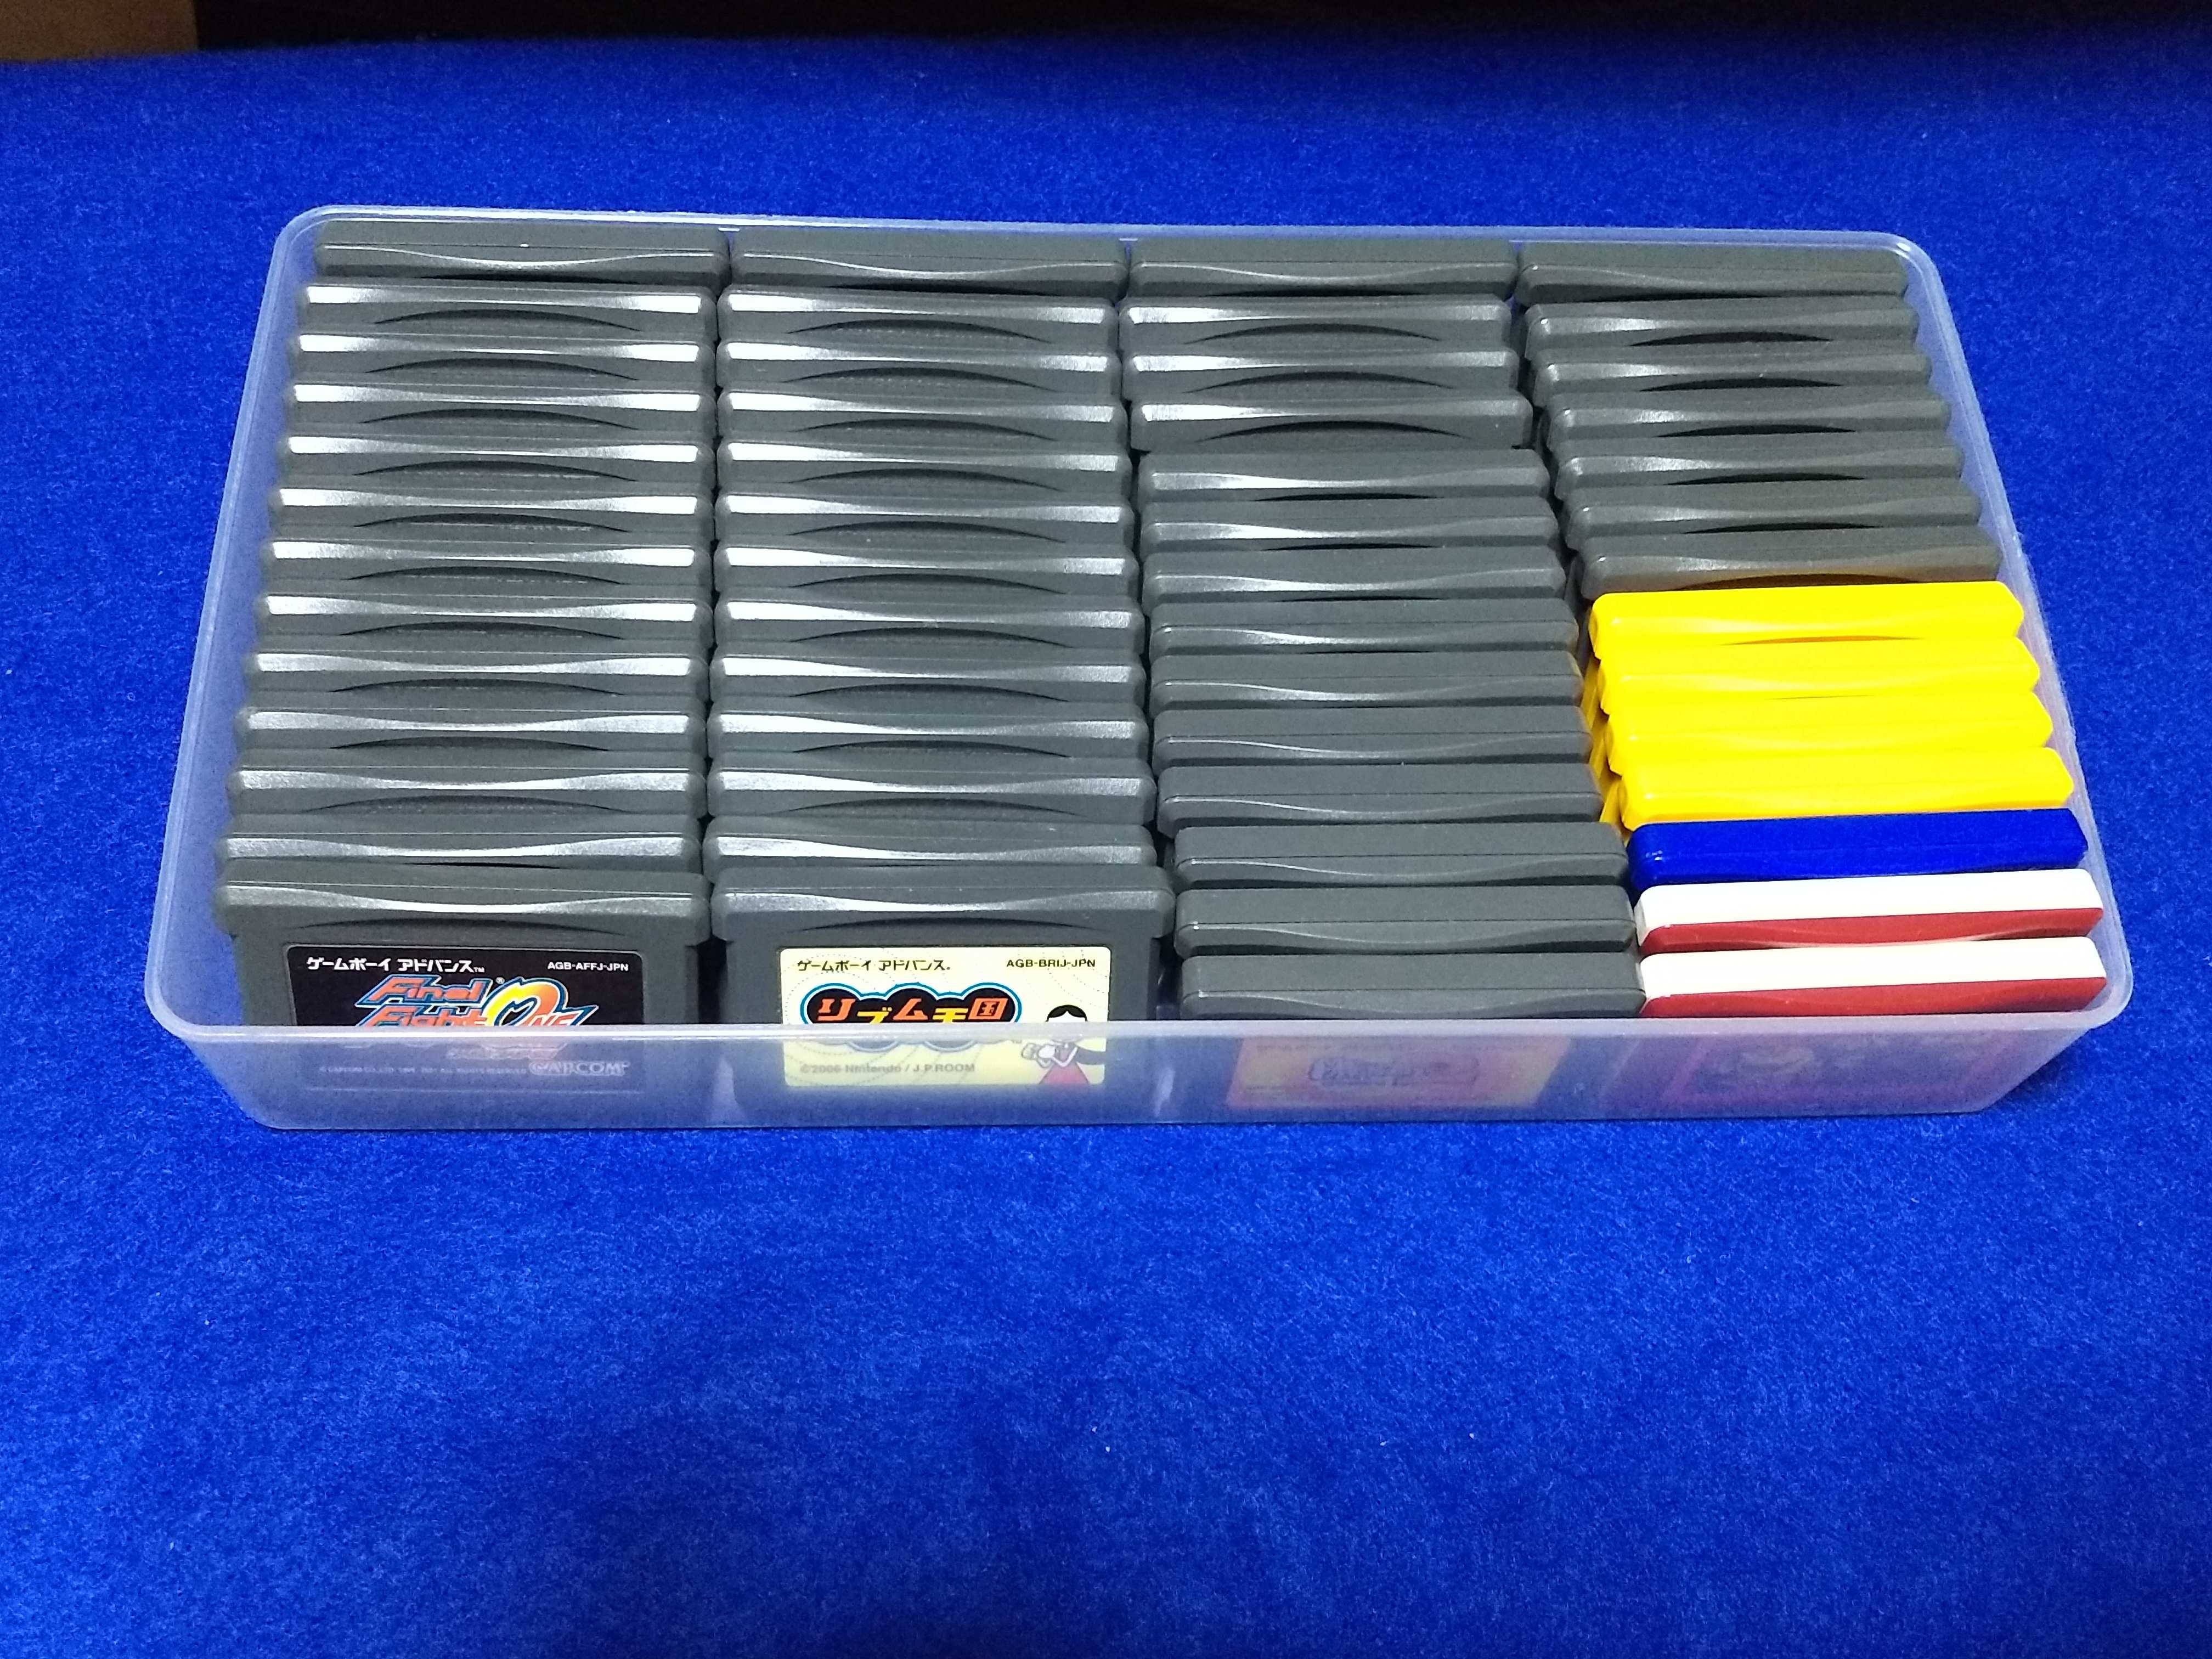 100円shopダイソーで Gba用に使用するケースを購入 レトロゲームは思い出と共に 楽天ブログ